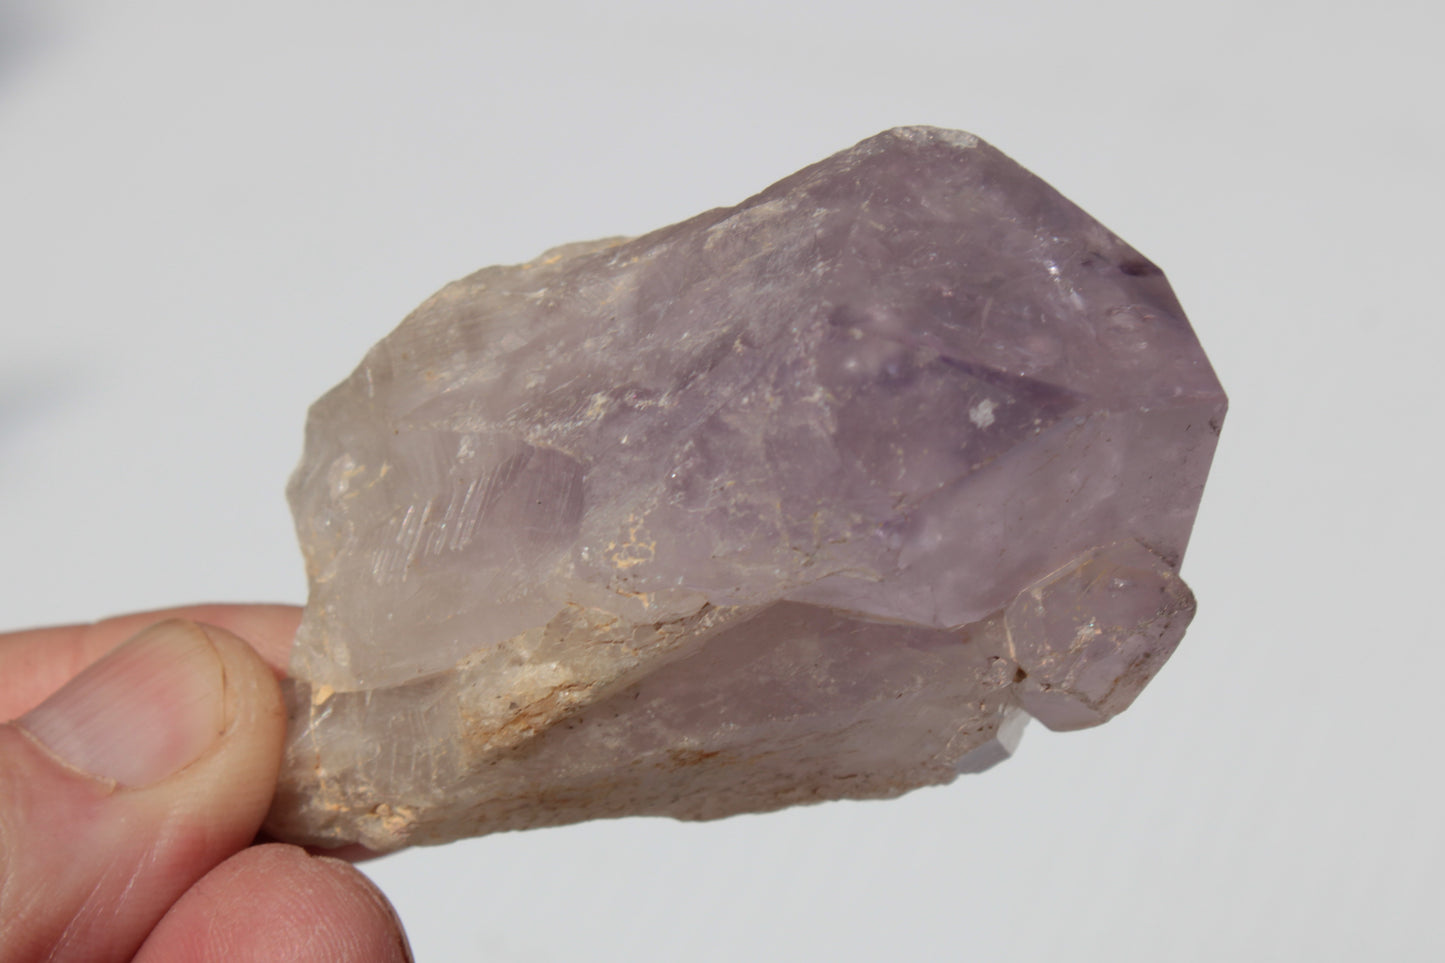 Amethyst crystal 103g SALE